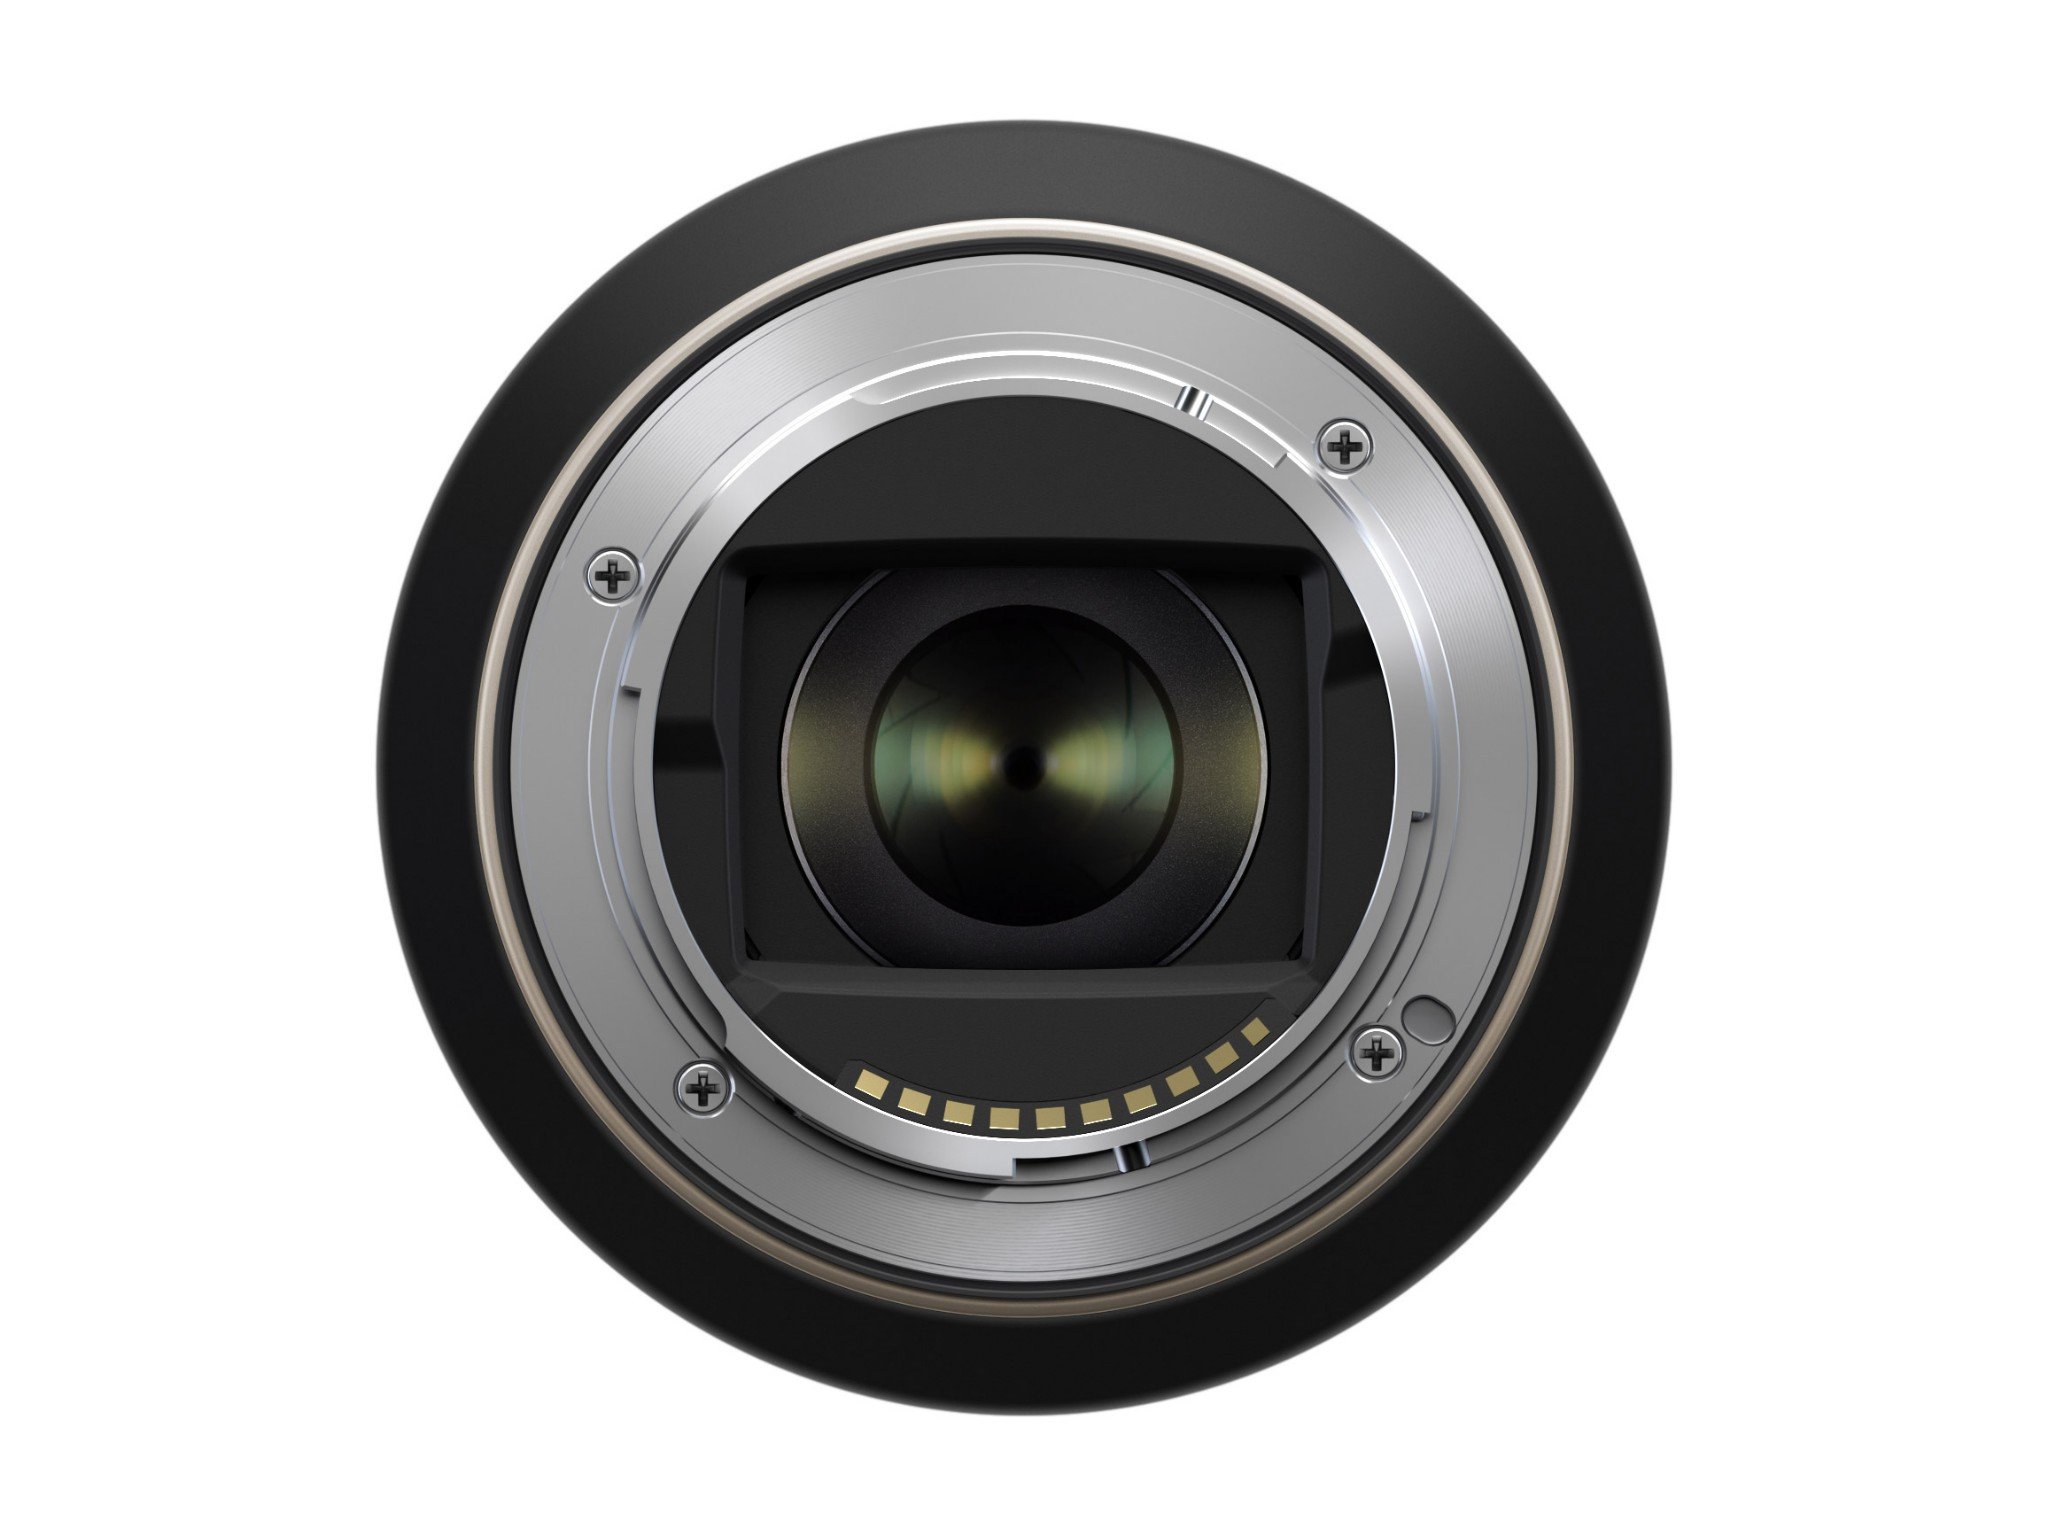 Tamron ra mắt ống kính 17-70mm F2.8 dành cho các máy ảnh Sony APS-C